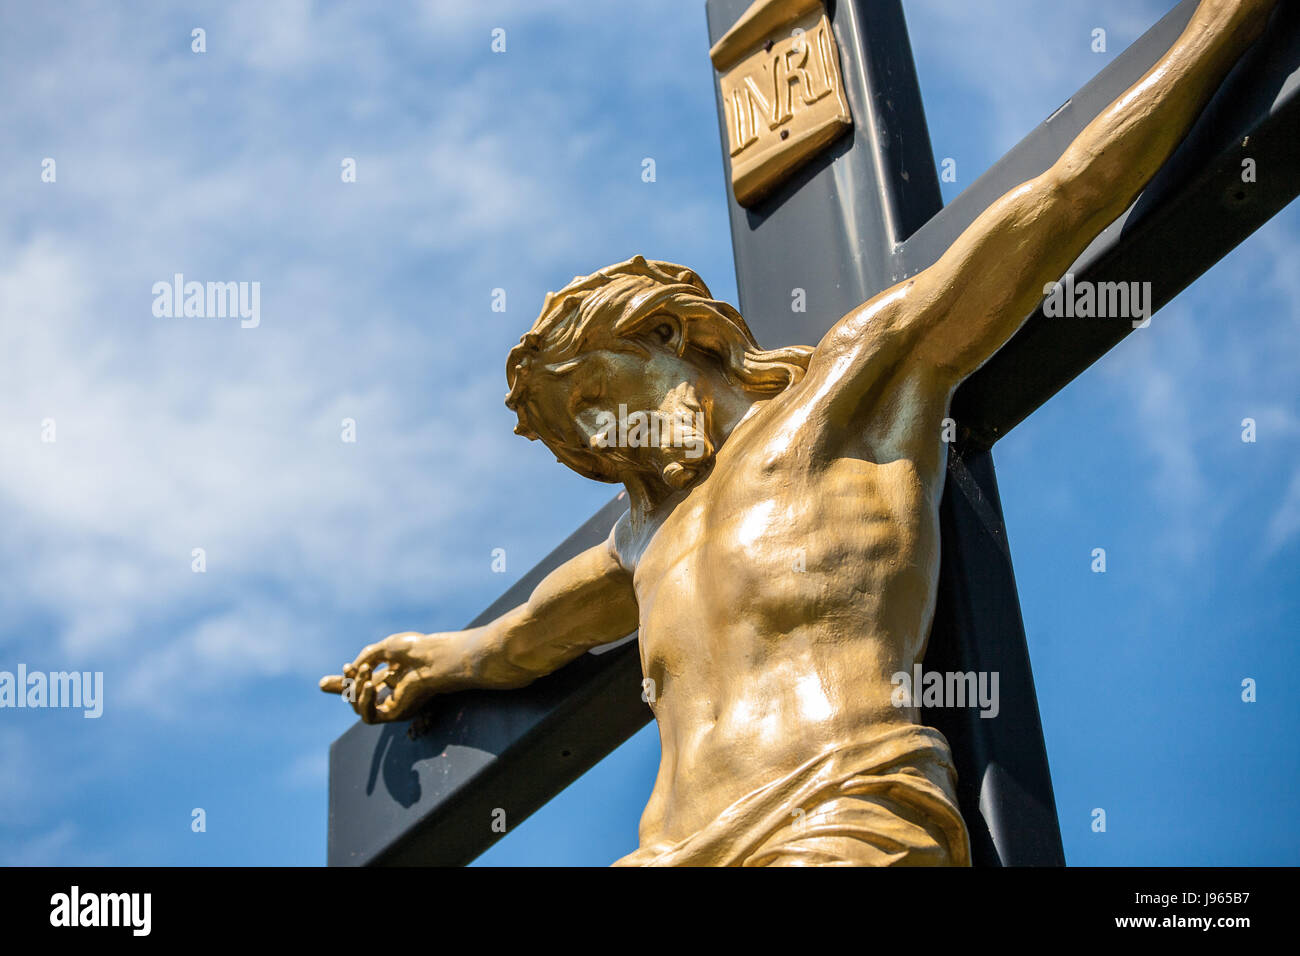 La crocifissione di Gesù, closeup, statua, crocifiggere, vellum, pergamena, Gesù Cristo, Foto Stock